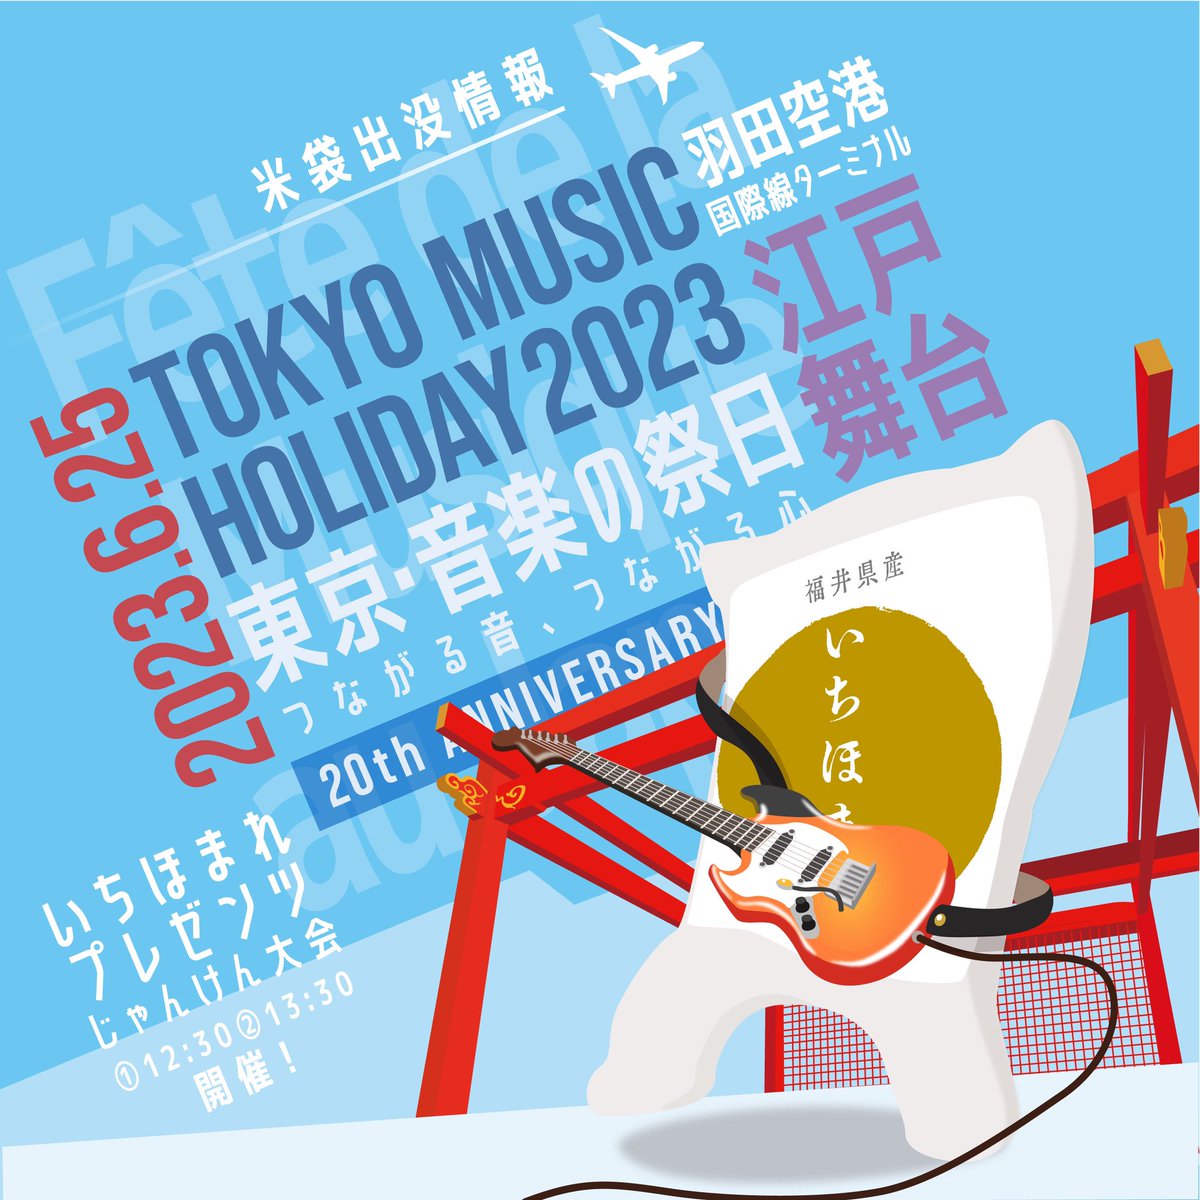 いちほまれ on Twitter: "【おはよう ️米袋通信 東京☀️】 埼玉は伊奈町に続き、羽田空港で開催される「東京音楽の祭日♫」にも米袋